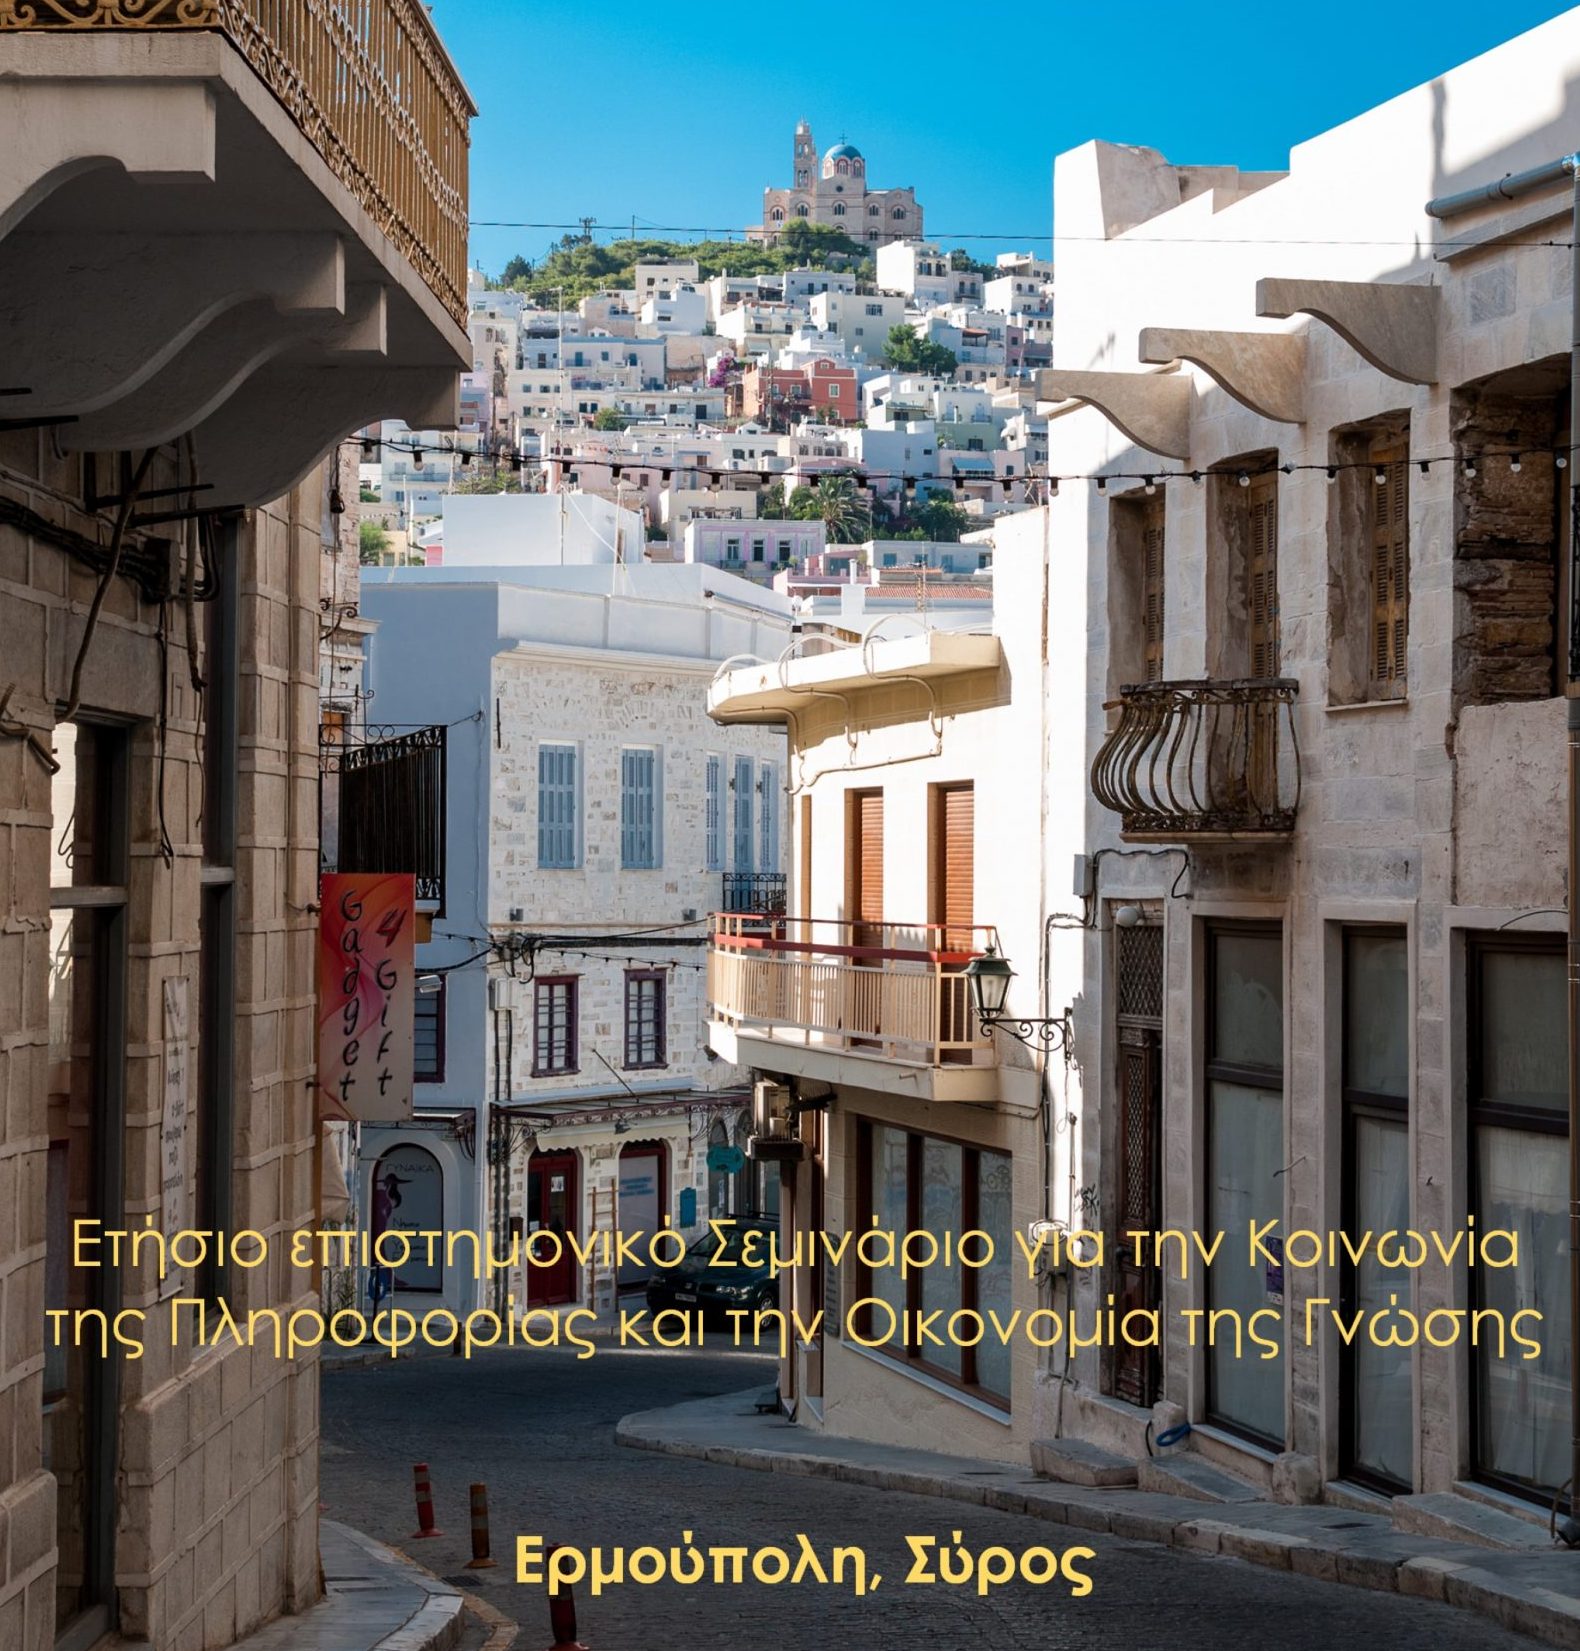 Το 17o Σεμινάριο της Ερμούπολης για την Κοινωνία της Πληροφορίας & την Οικονομία της Γνώσης, 8-10 Ιουλίου 2022